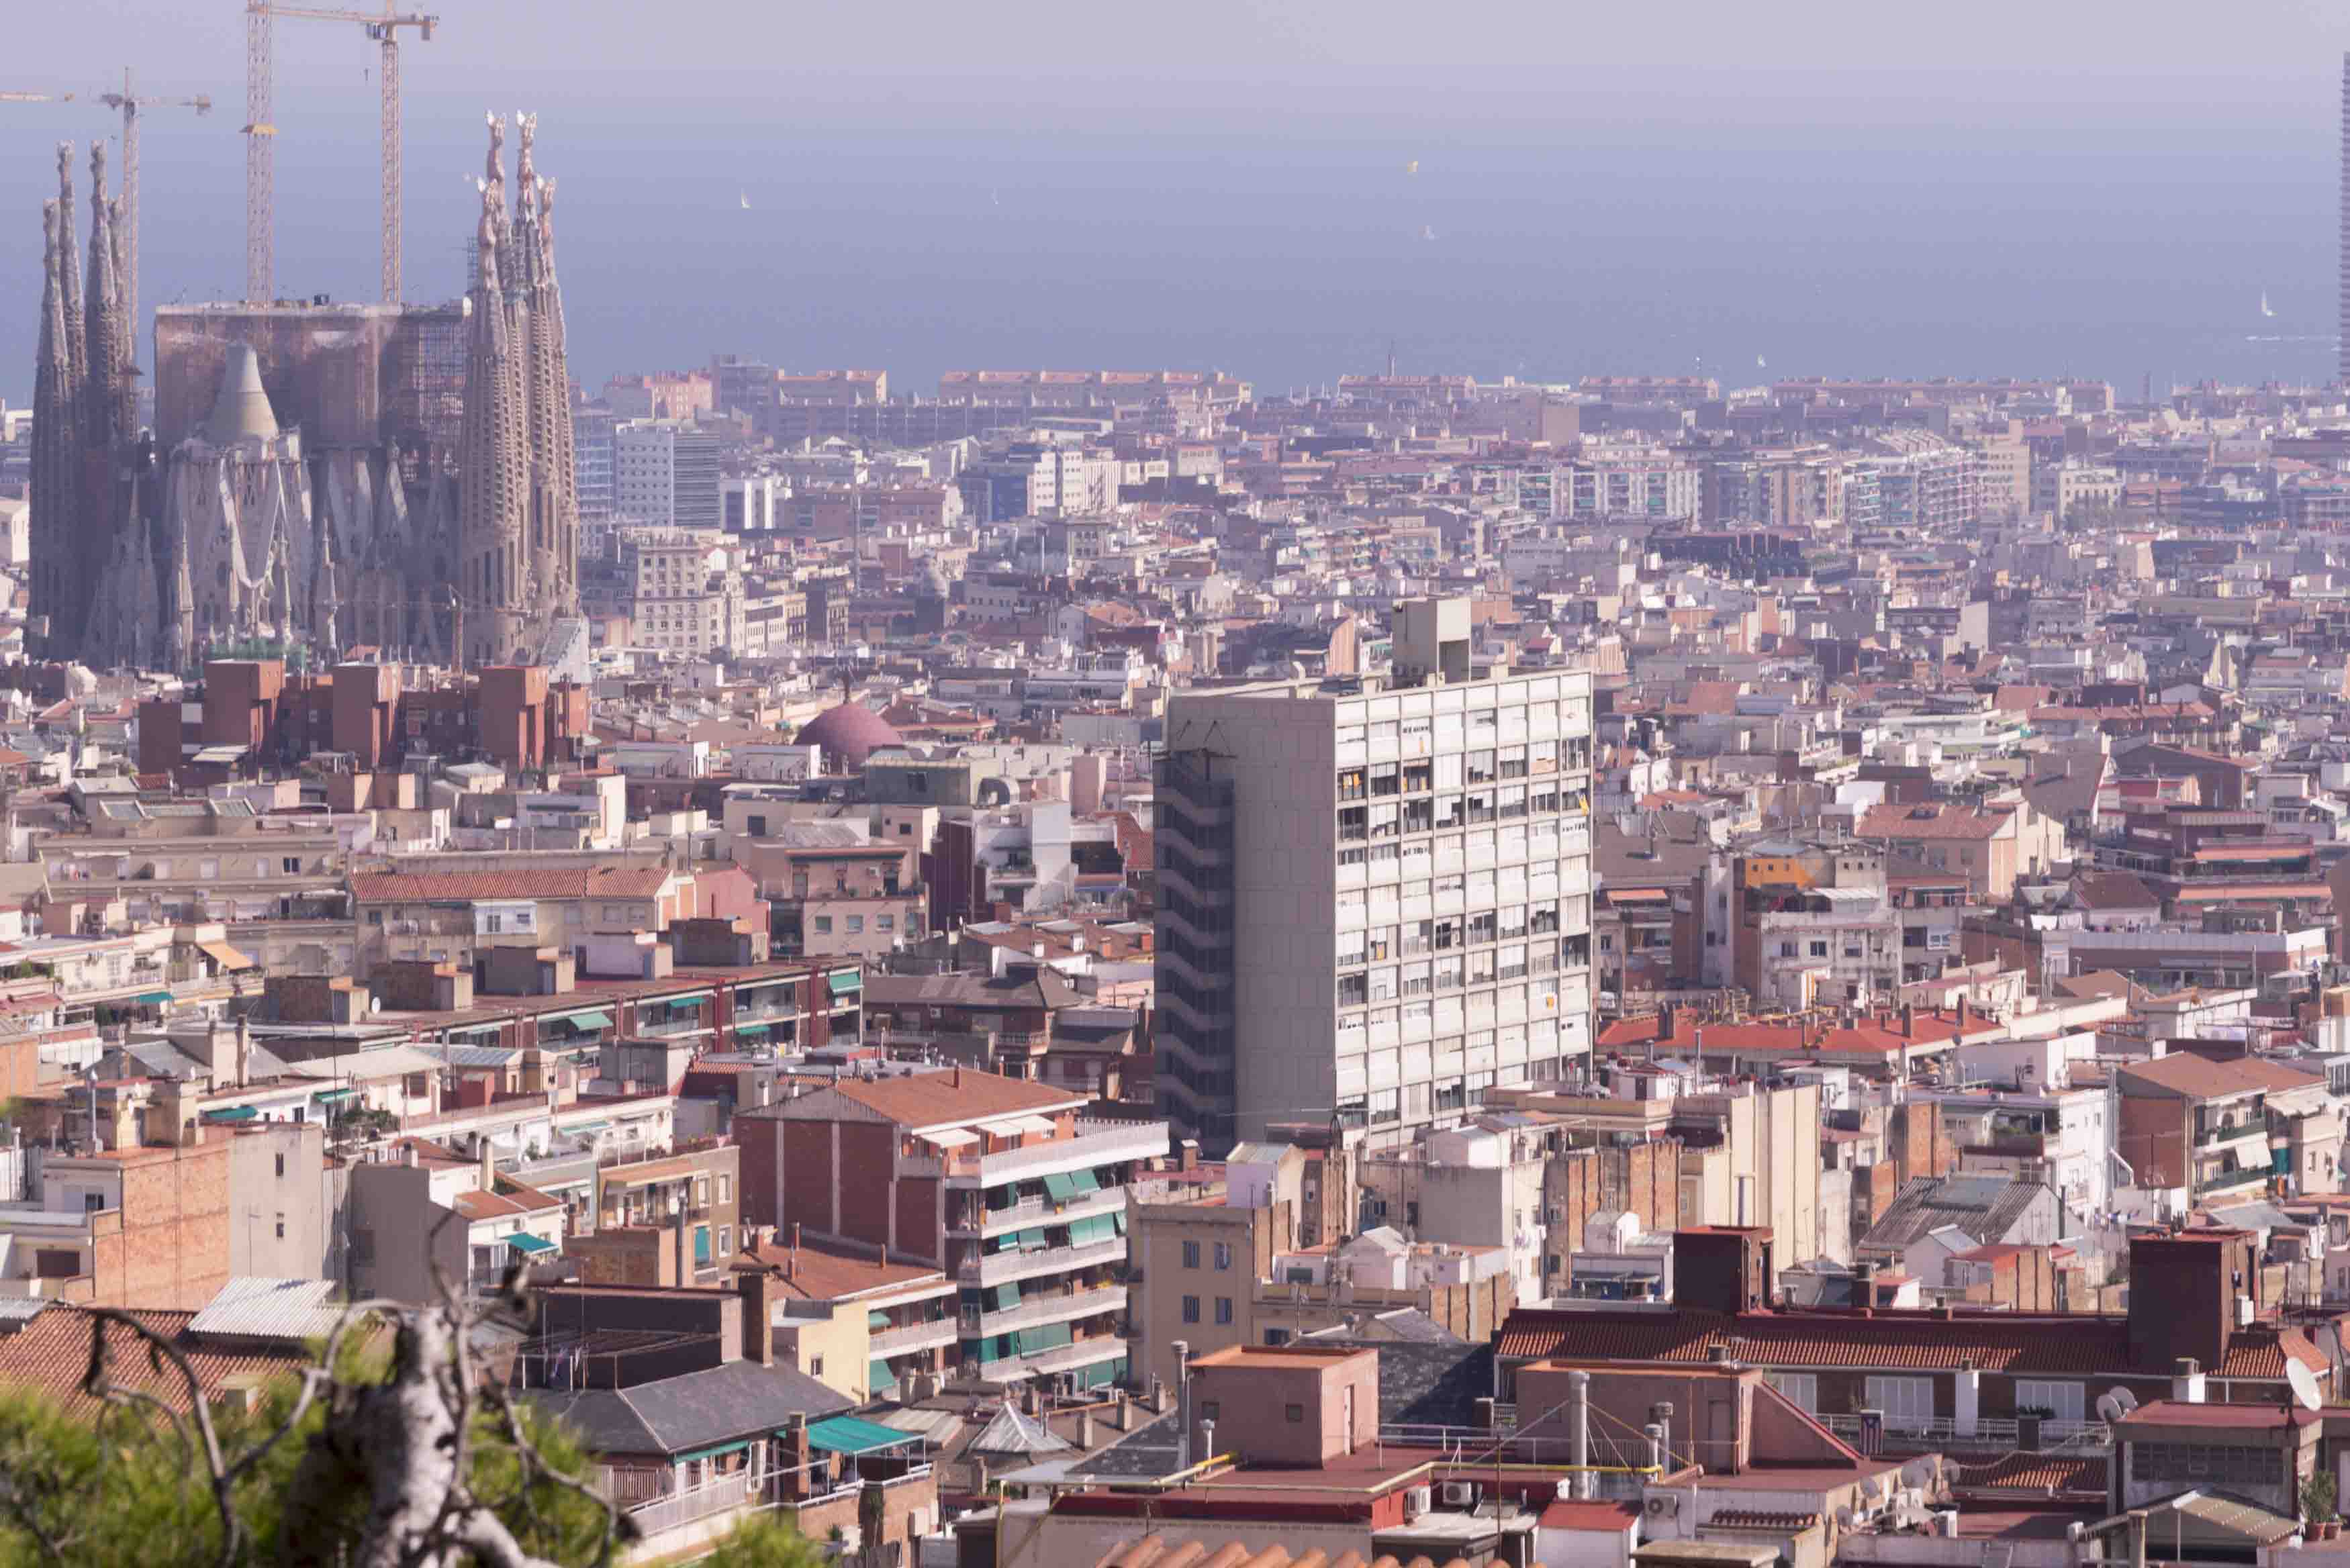 Blick auf Barcelona, Links die Kirchenbaustelle Sagrada Familia, Foto: Robert B. Fishman, 4.10.2014